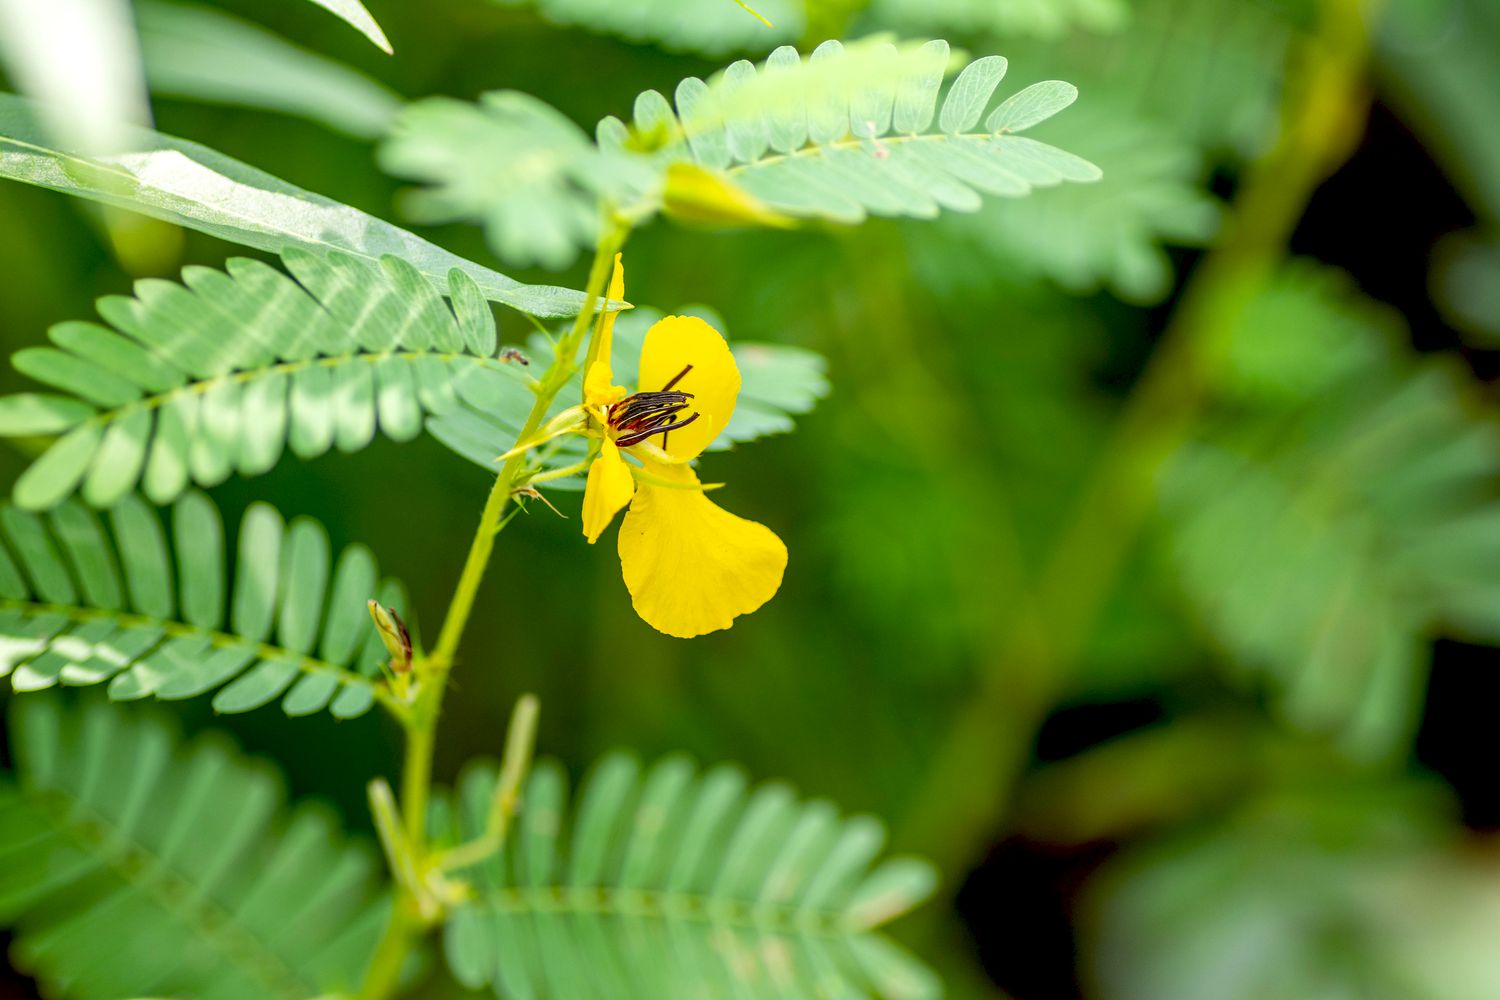 Rebhuhn-Erbsenpflanze mit gelber Blüte umgeben von gefiederten Blättern in Nahaufnahme